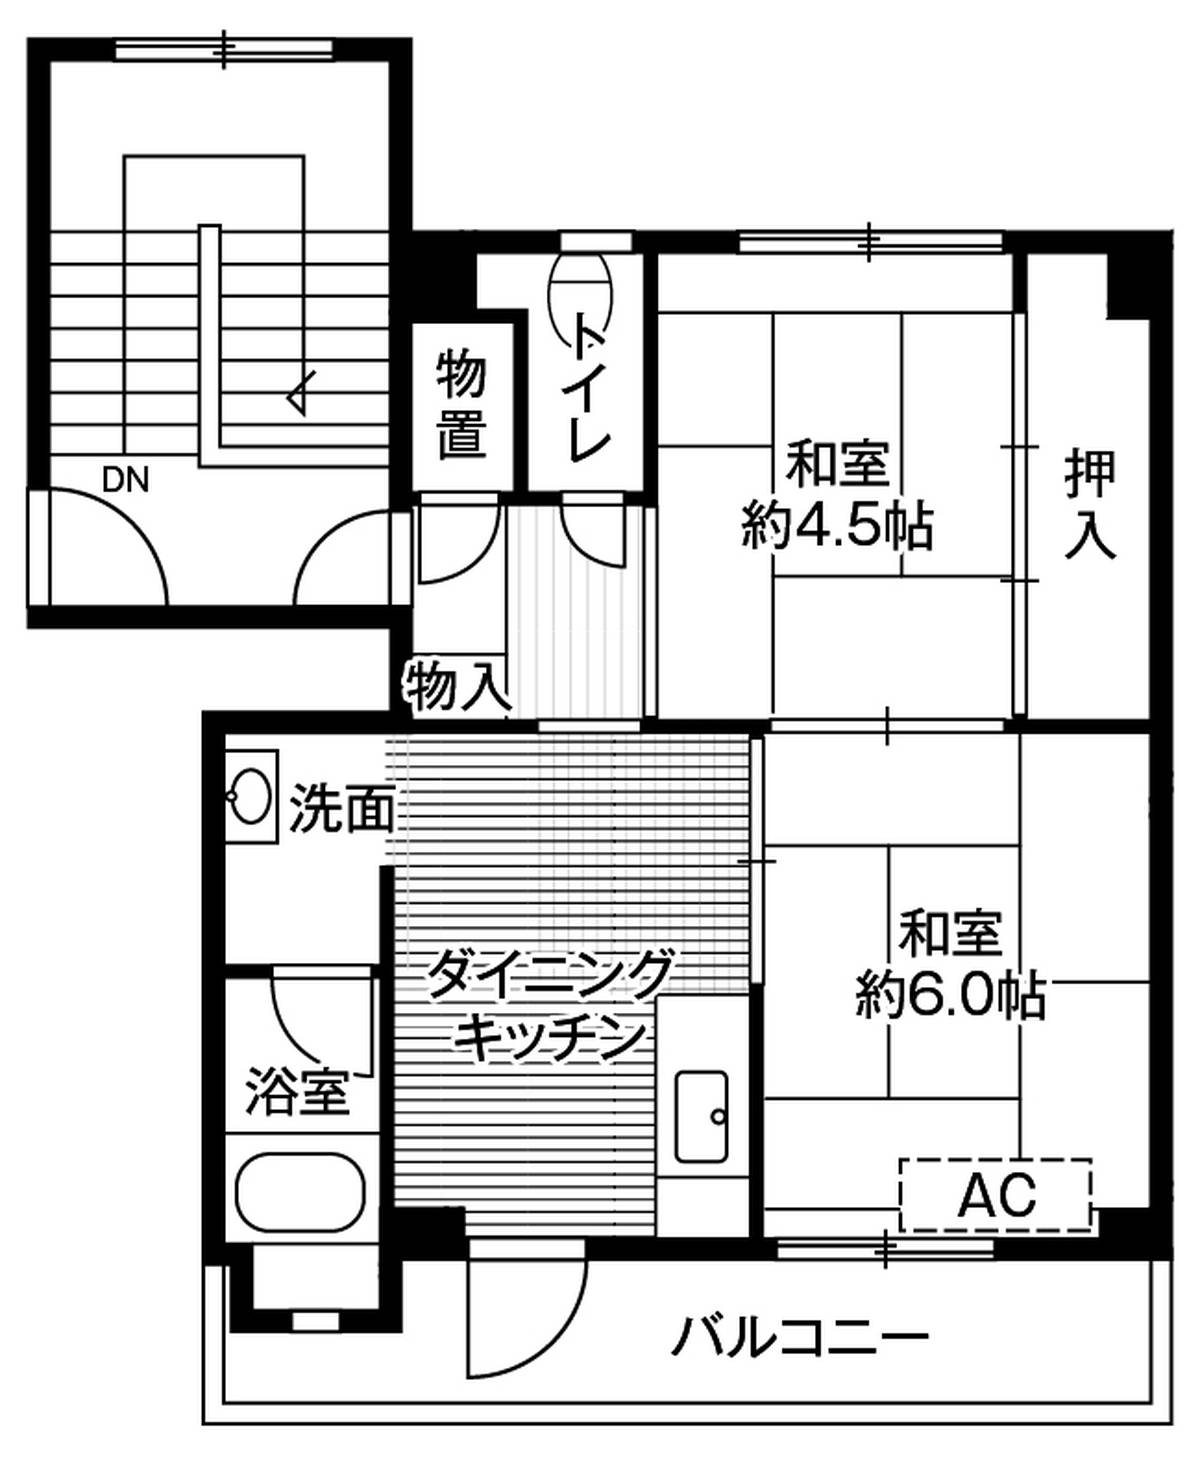 位于富山市的Village House 八尾的平面图2DK